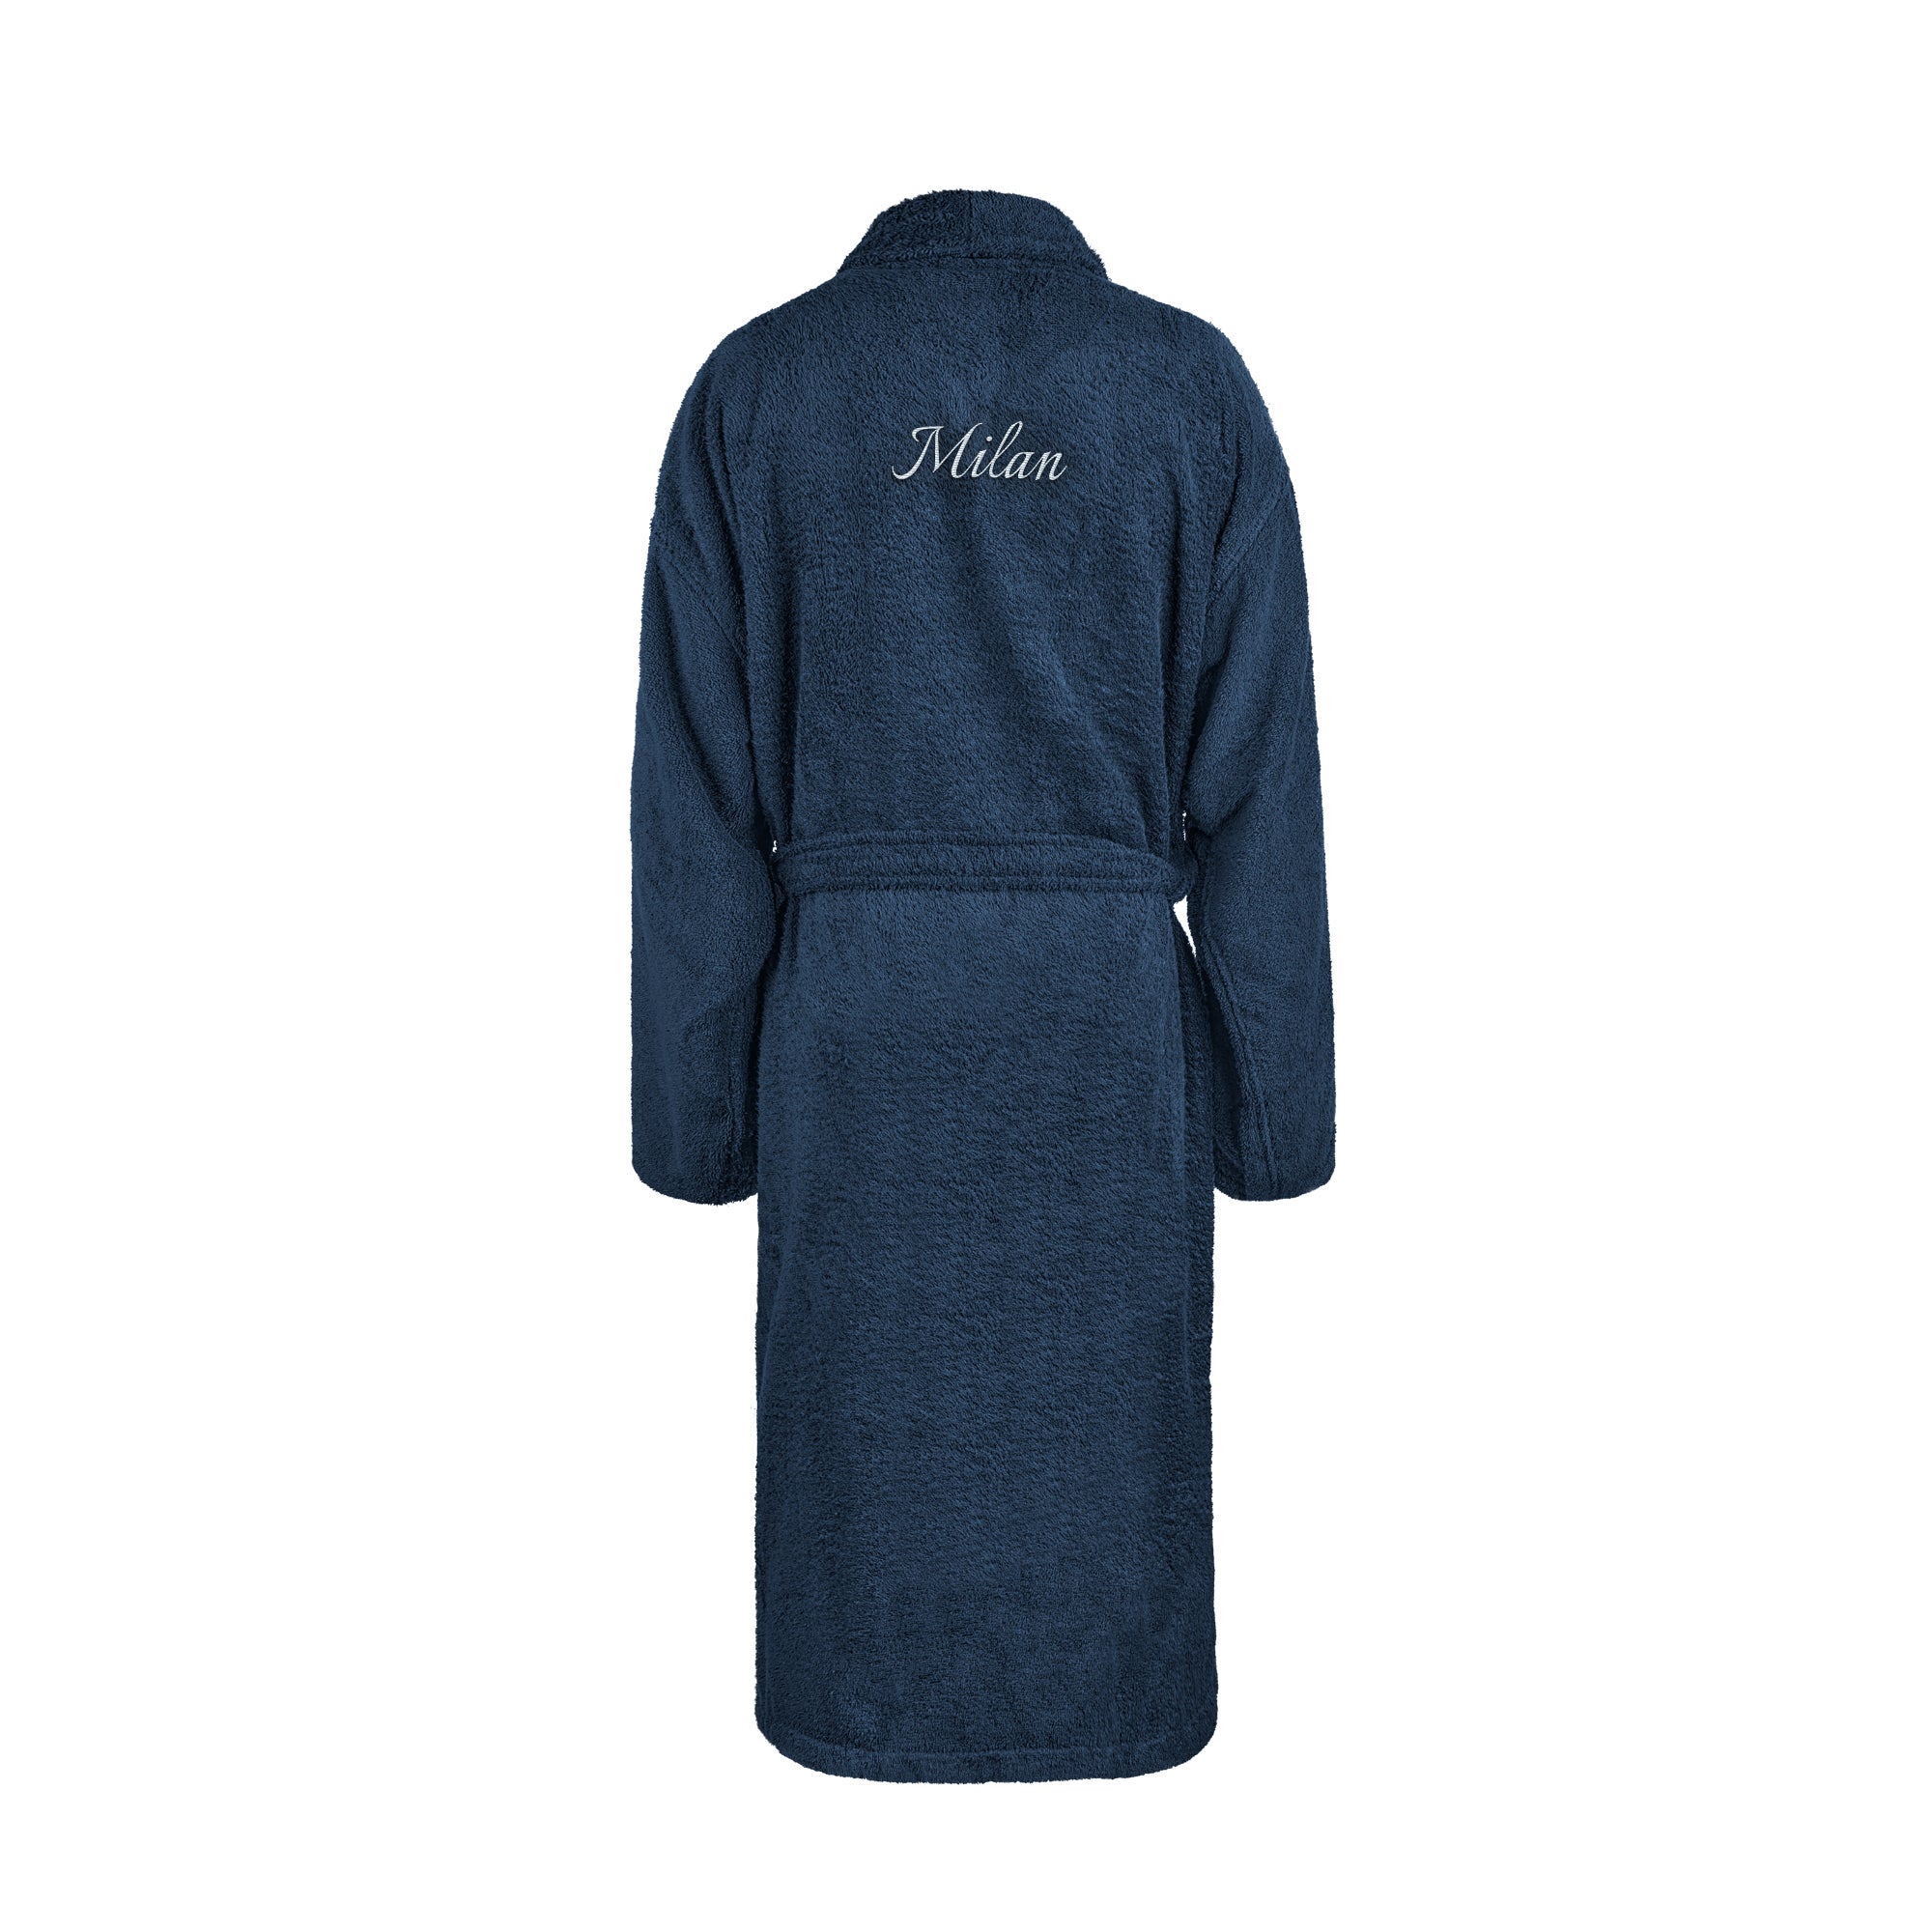 Heren badjas borduren - Donkerblauw - L/XL